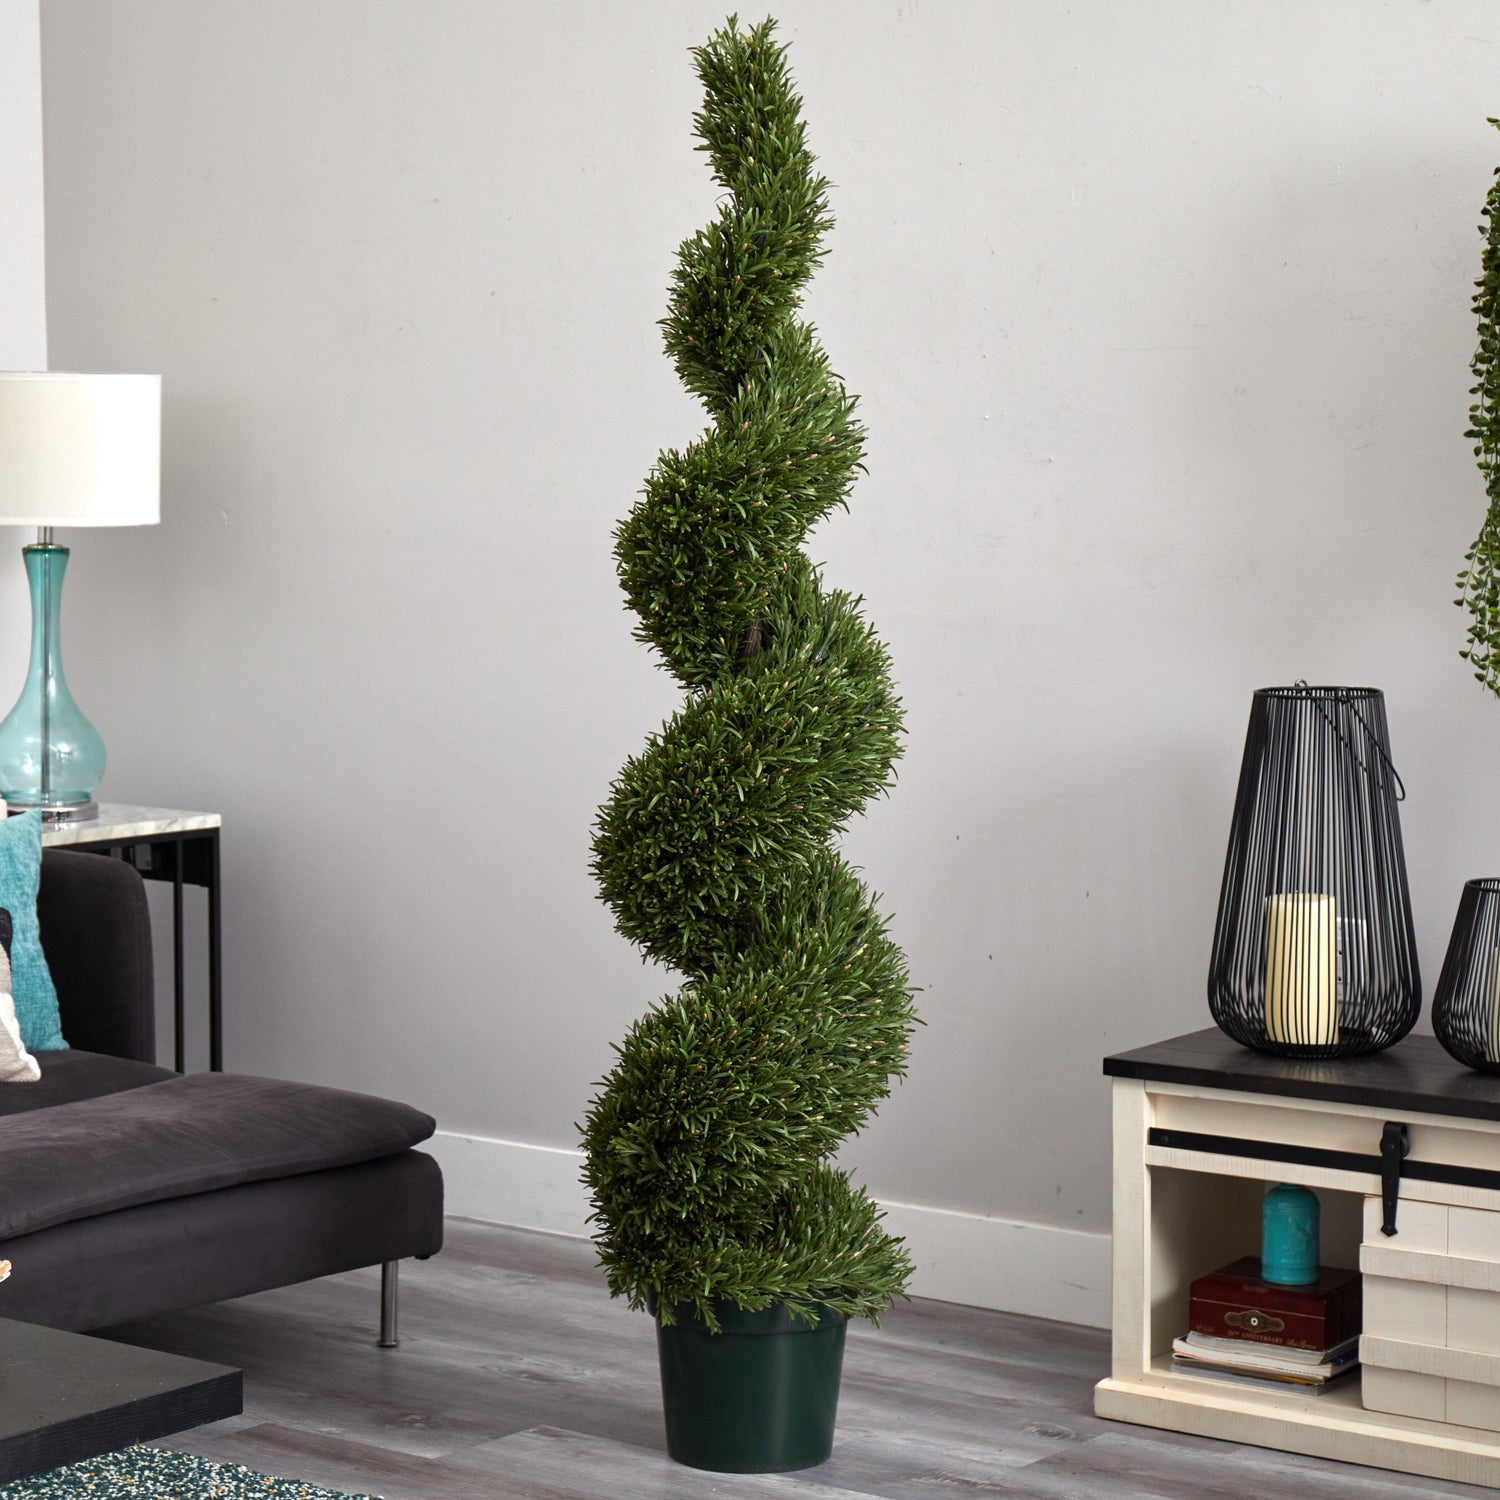 6' Rosemary Spiral Tree (Indoor/Outdoor)